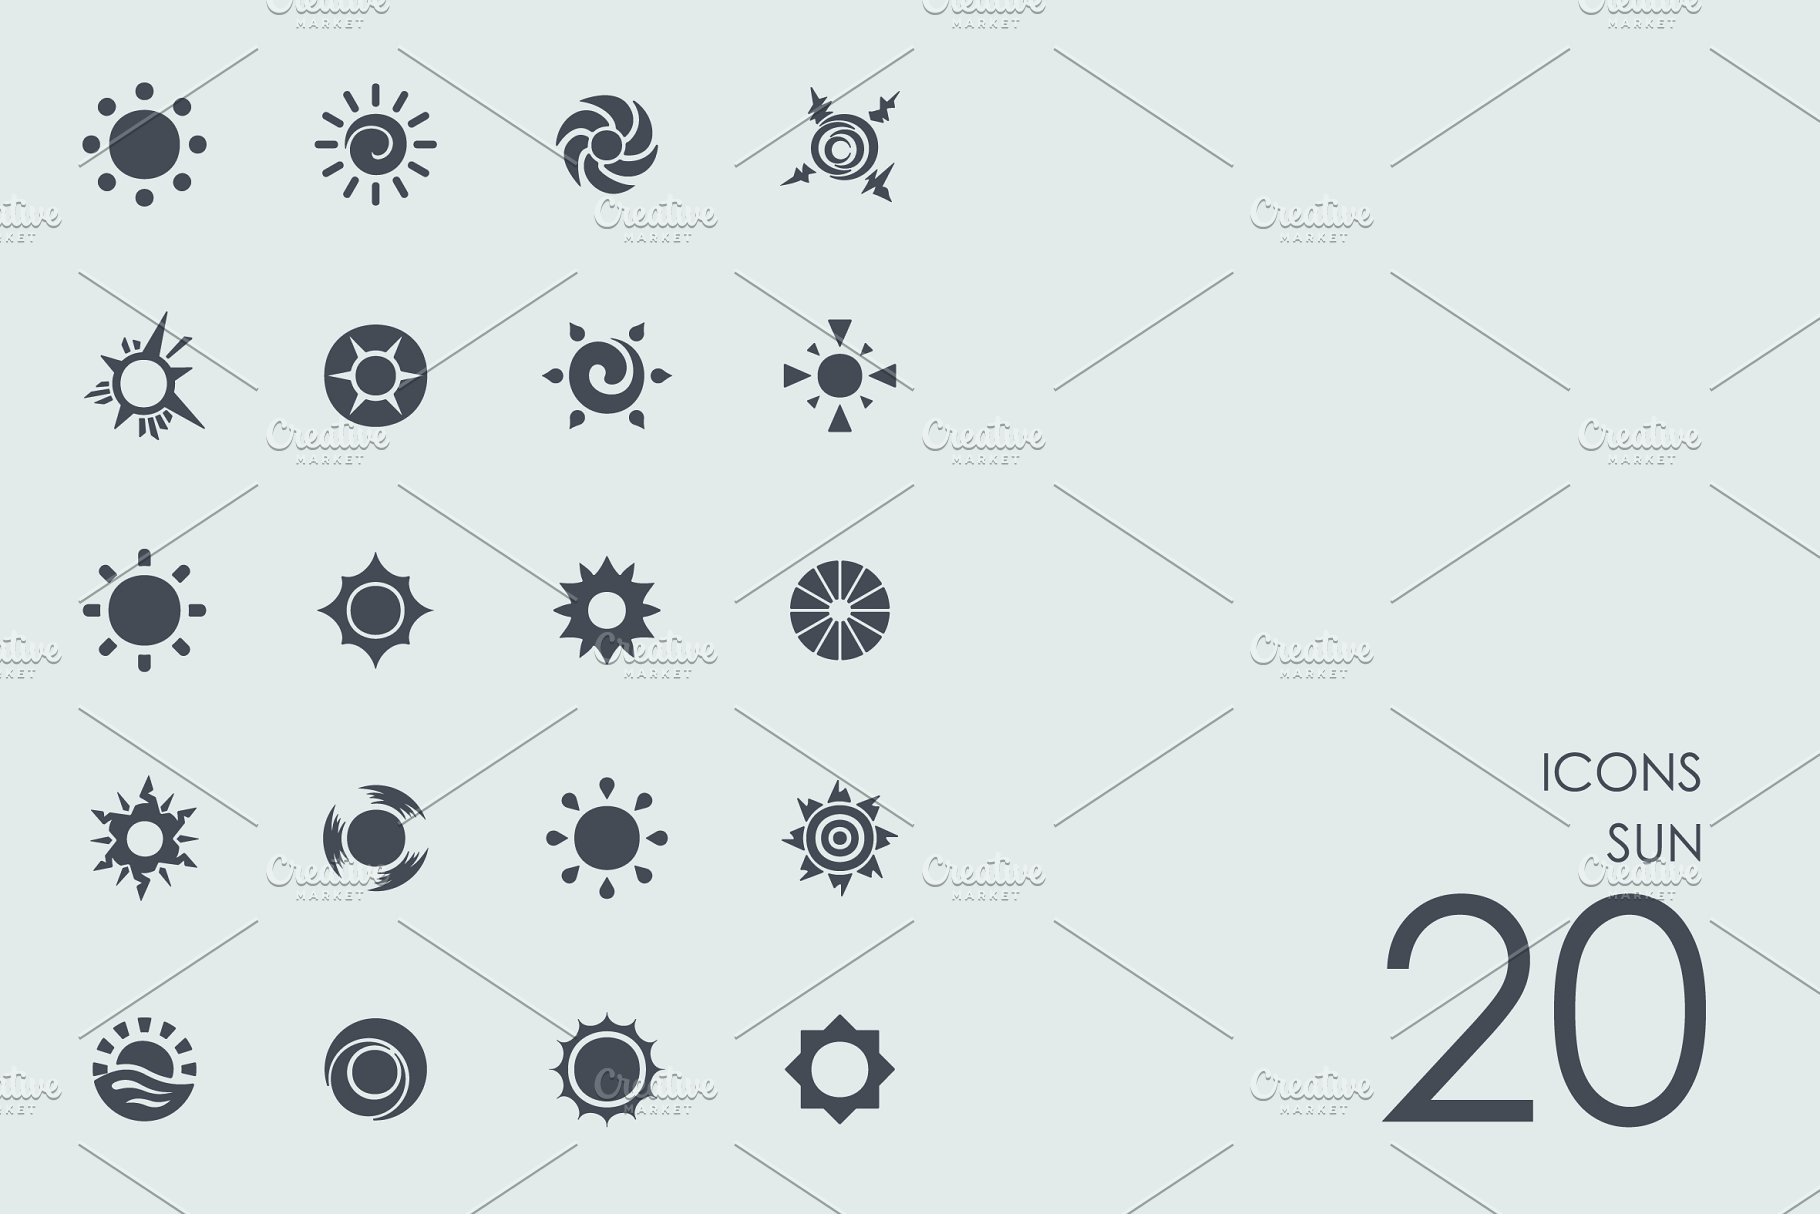 各种形状风格的太阳图标 Sun icons插图